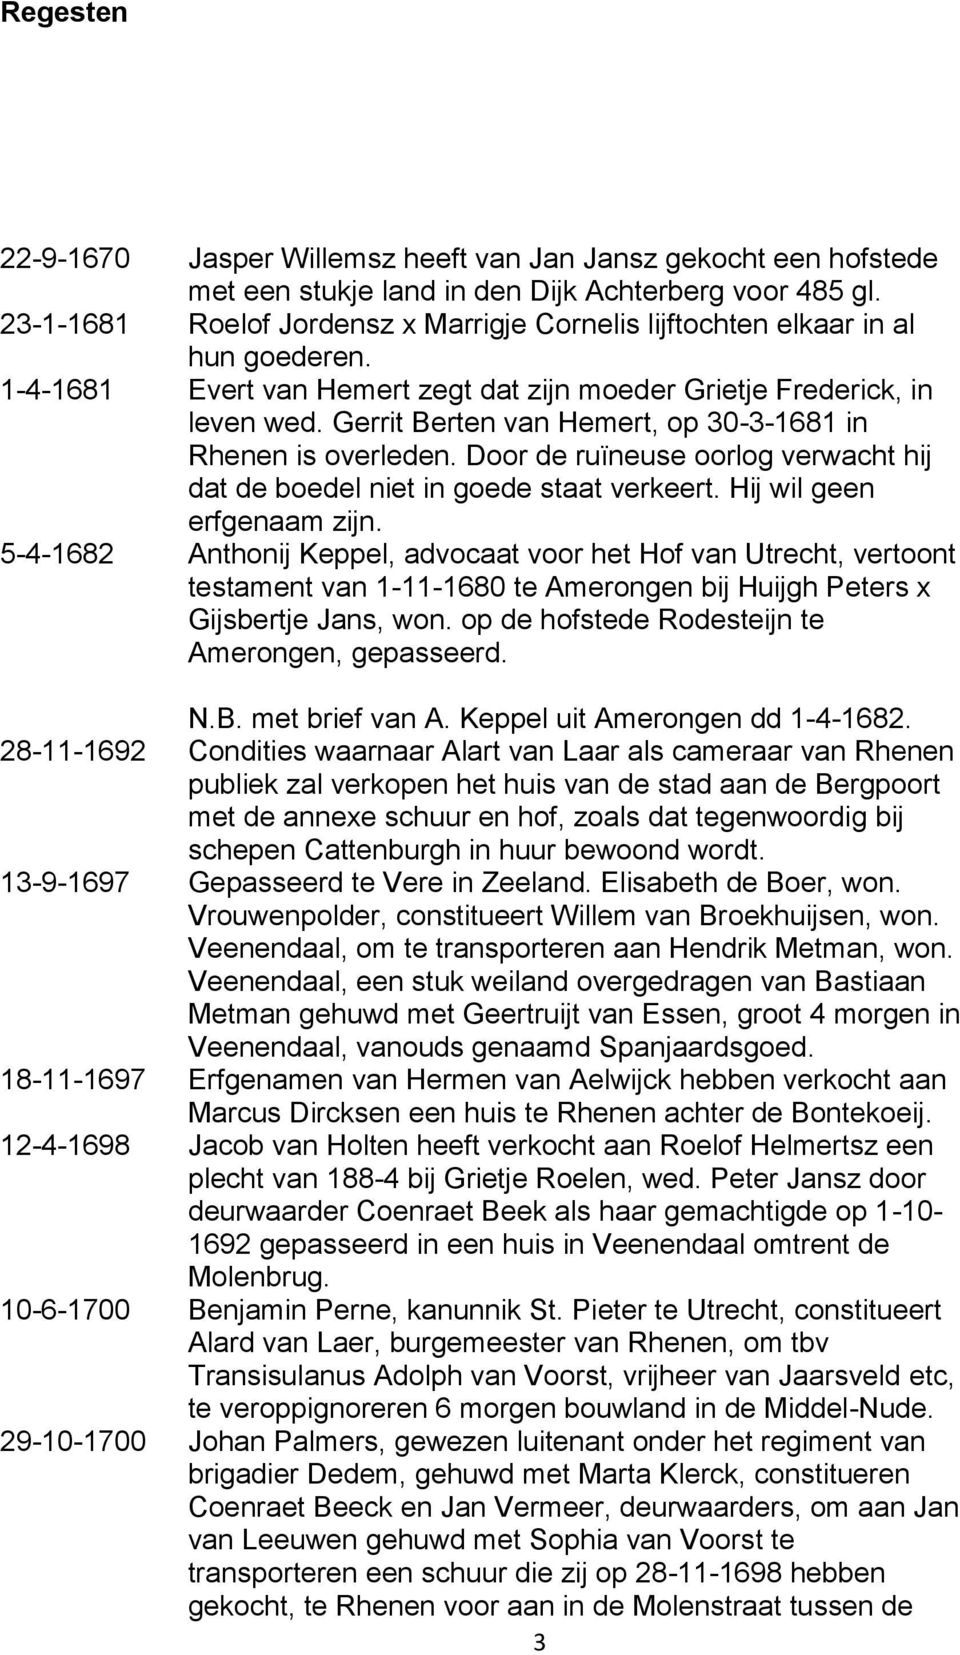 Gerrit Berten van Hemert, op 30-3-1681 in Rhenen is overleden. Door de ruïneuse oorlog verwacht hij dat de boedel niet in goede staat verkeert. Hij wil geen erfgenaam zijn.